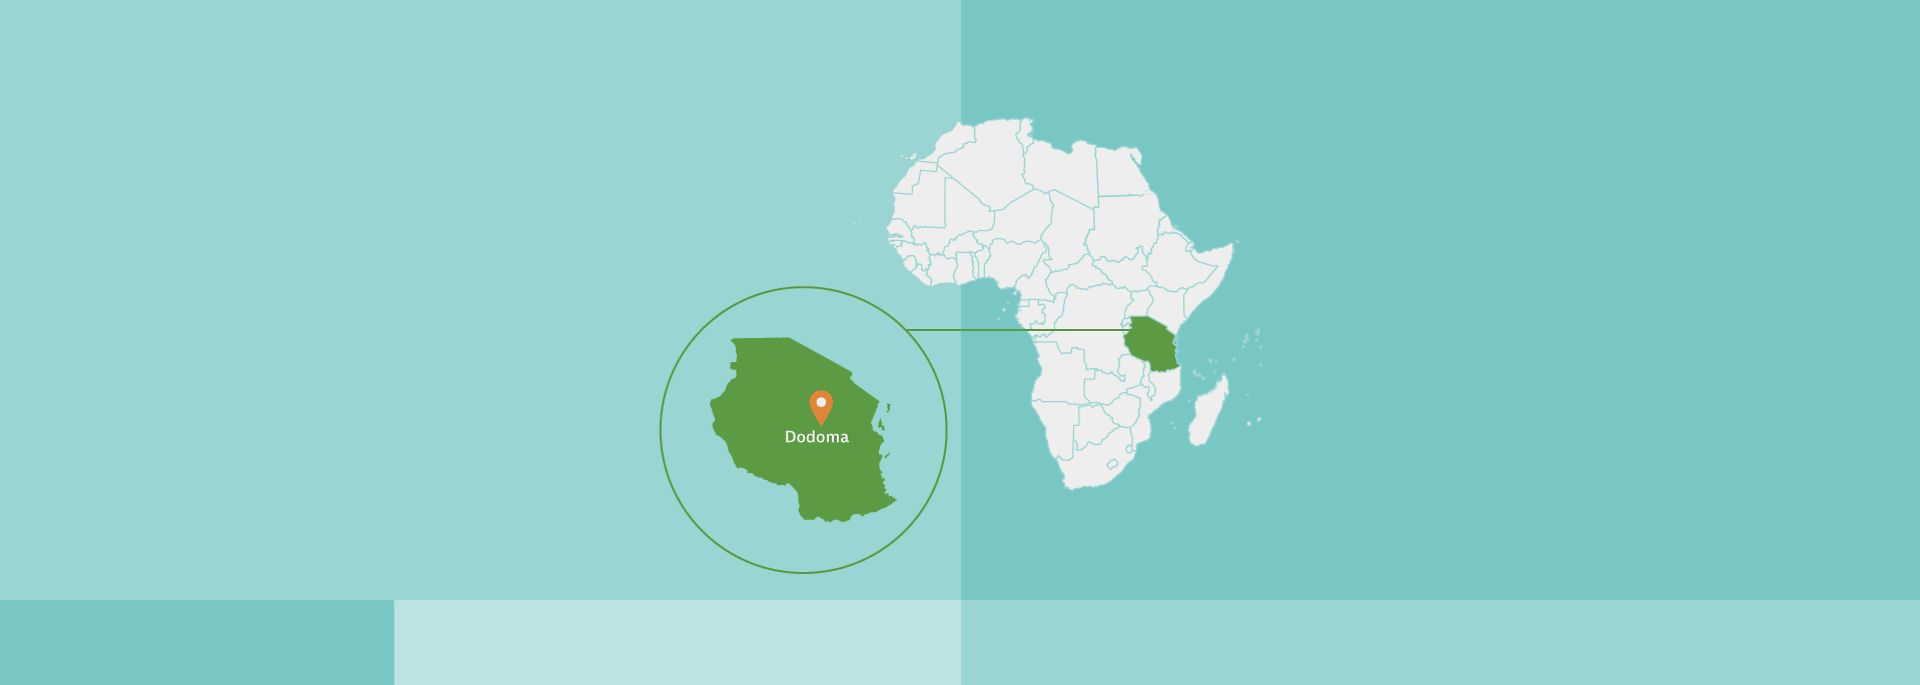 Afrikakarte, Tansania